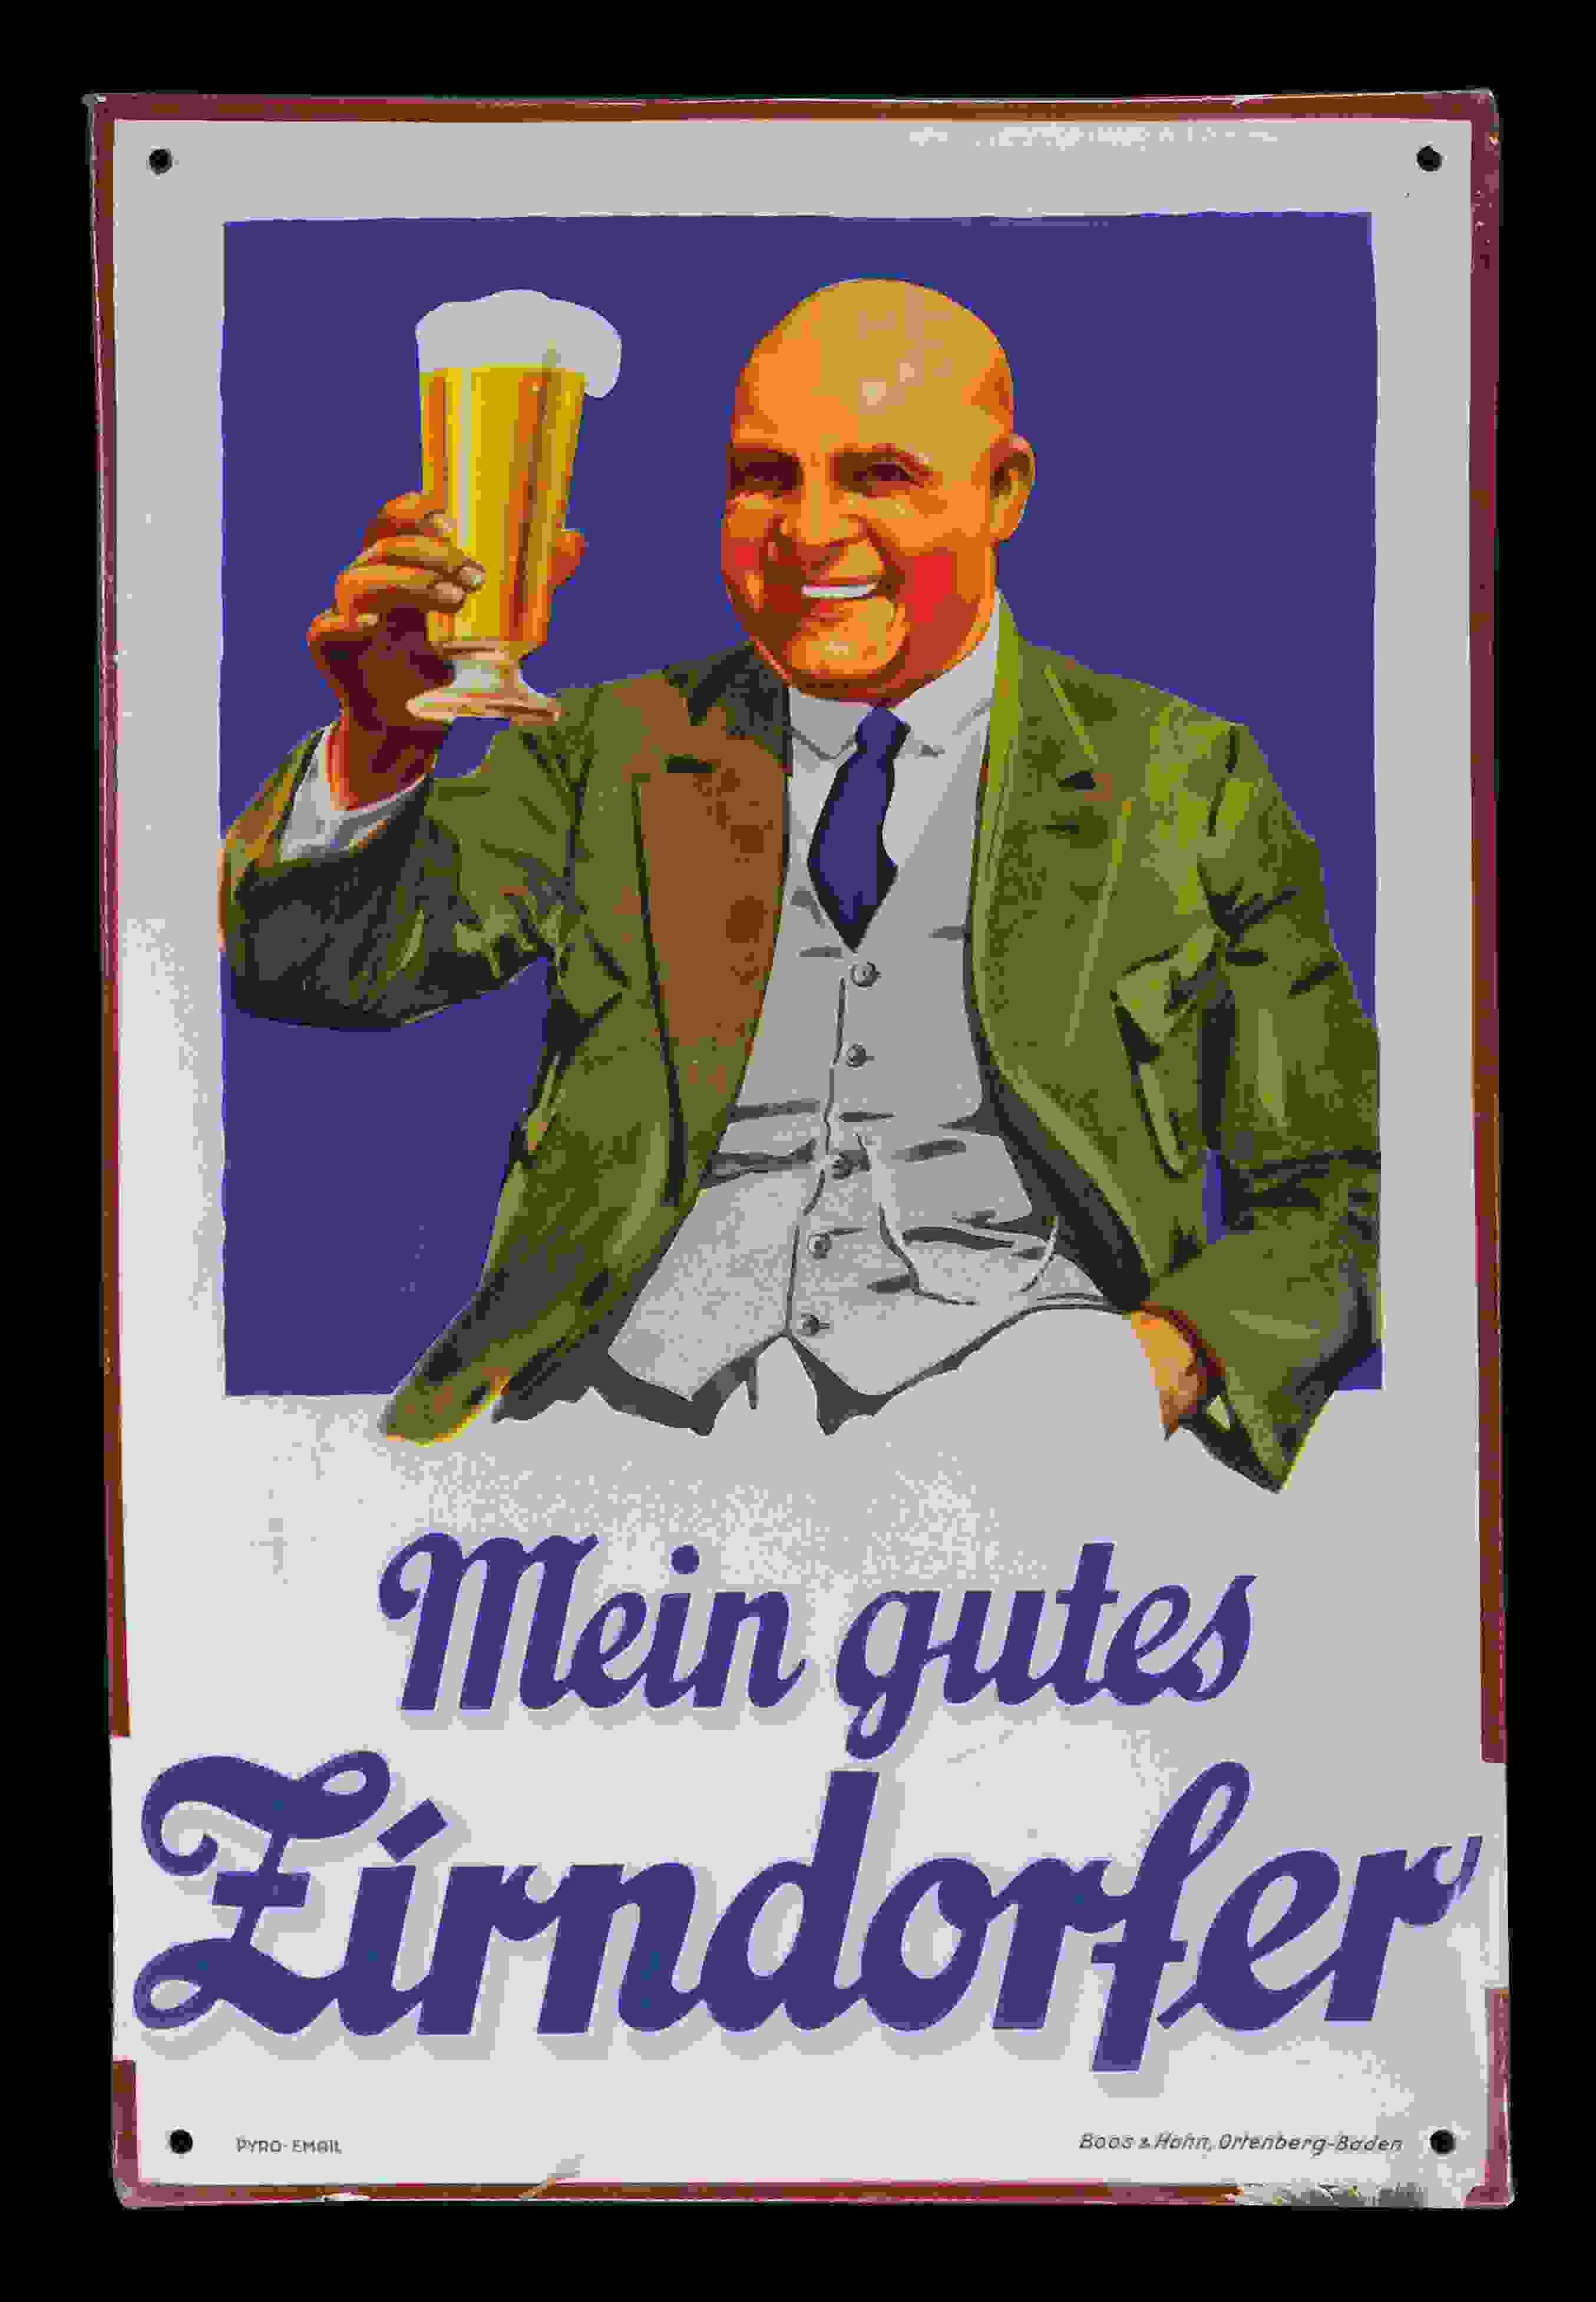 Zirndorfer Bier 